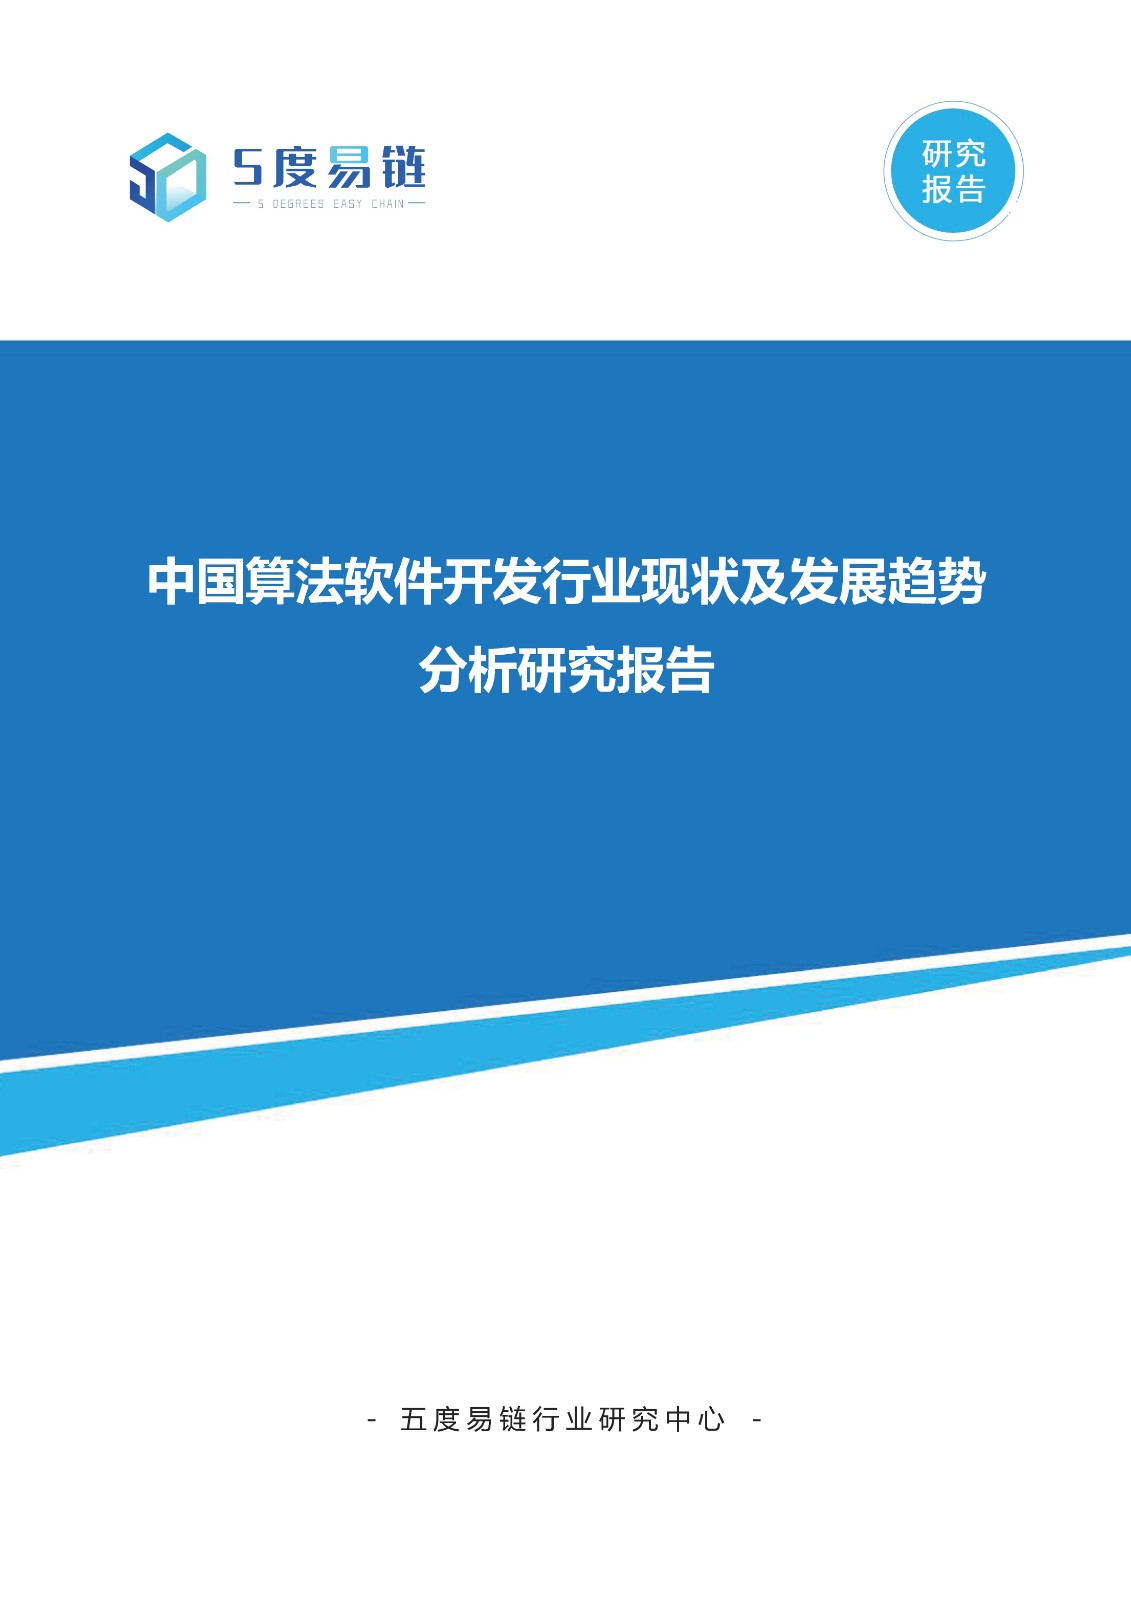 中国算法软件开发行业现状及发展趋势分析研究报告